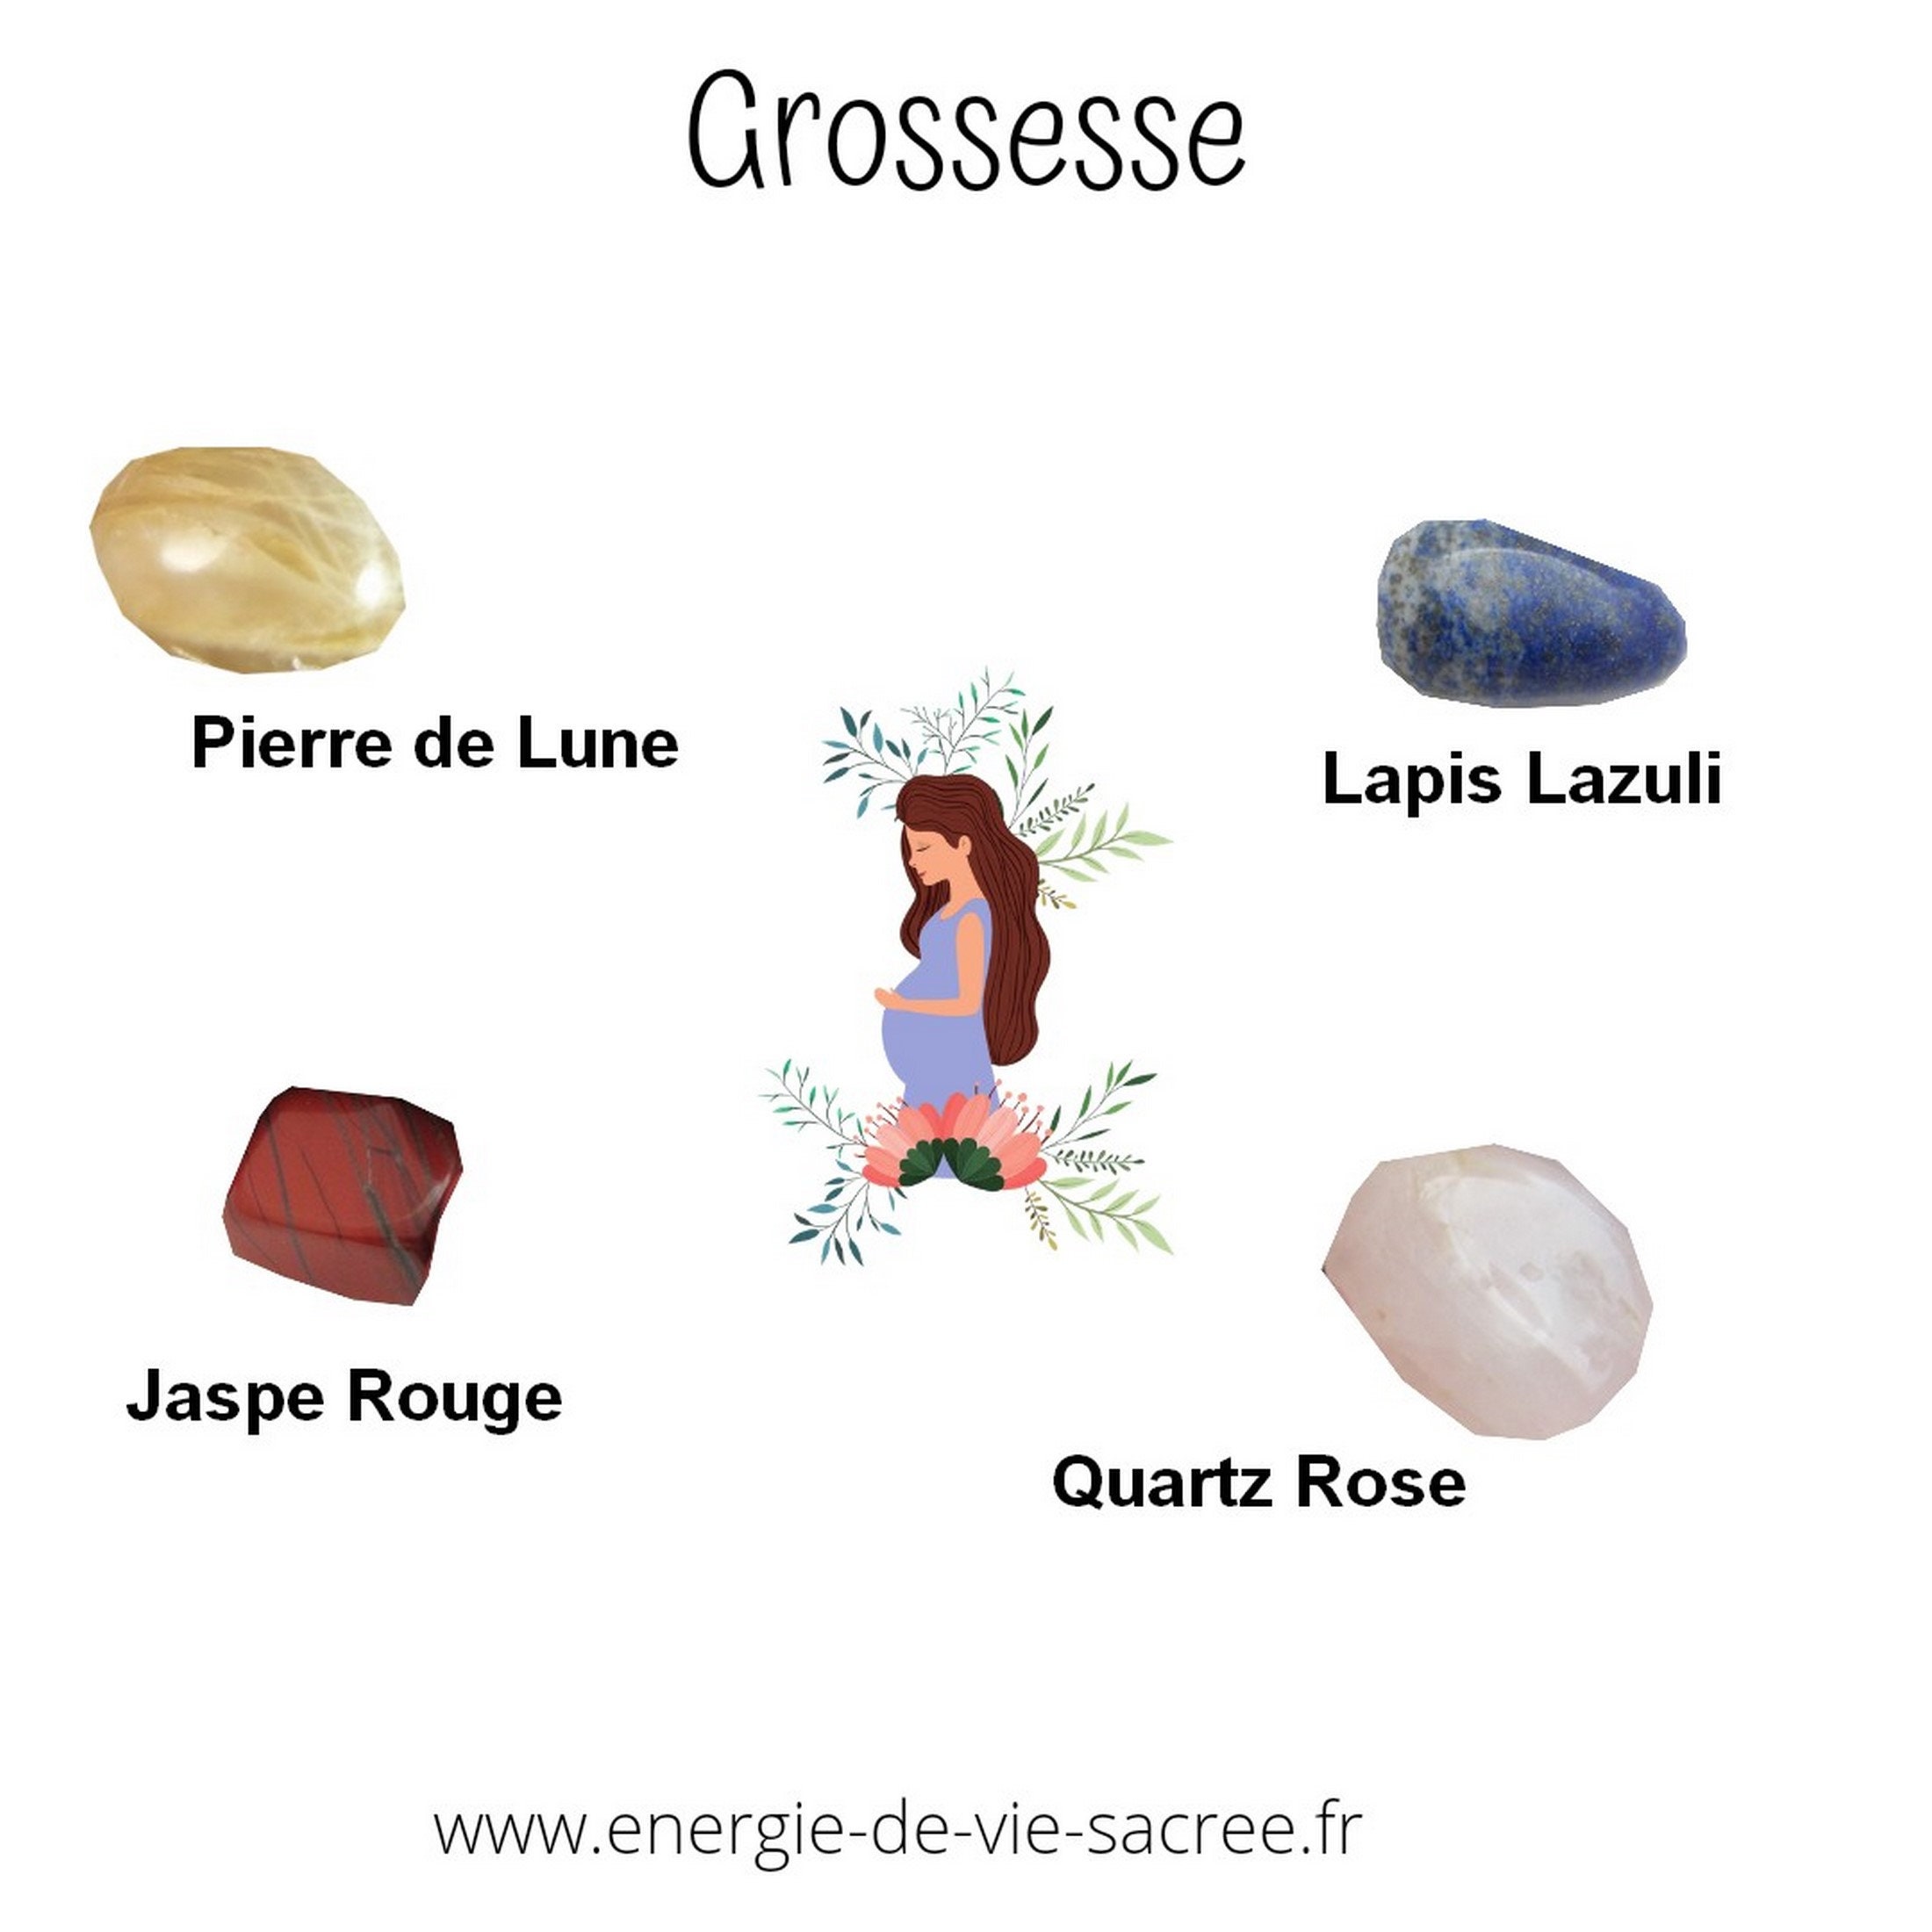 Grossesse, Ensemble de Pierre, Jaspe Rouge, Lapis Lazuli, Quartz Rose et Pierre Lune, Pierres Roulée